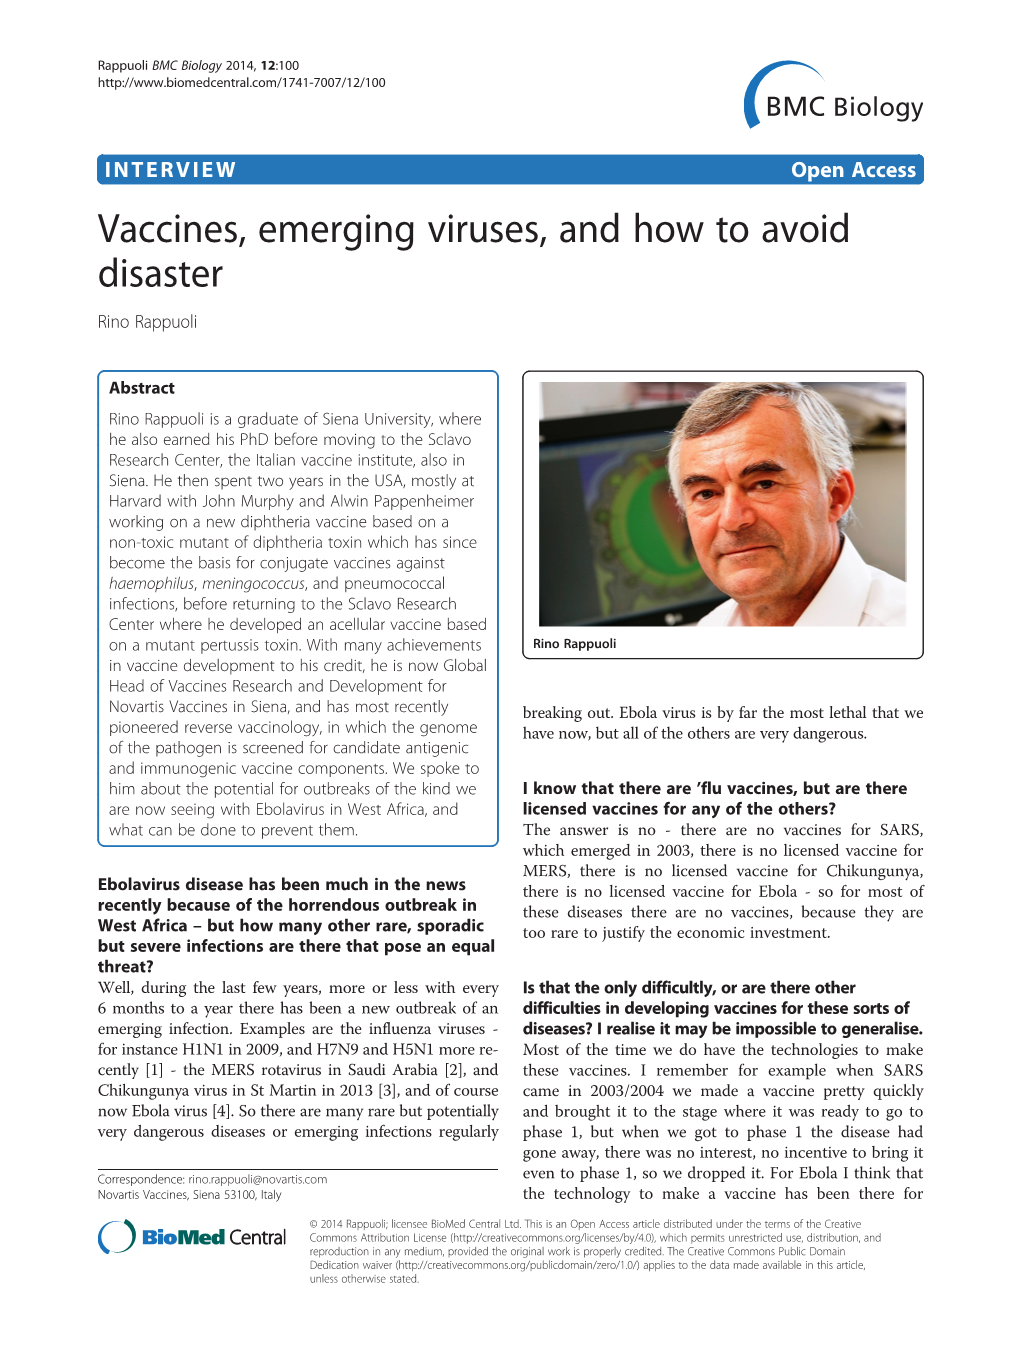 Vaccines, Emerging Viruses, and How to Avoid Disaster Rino Rappuoli